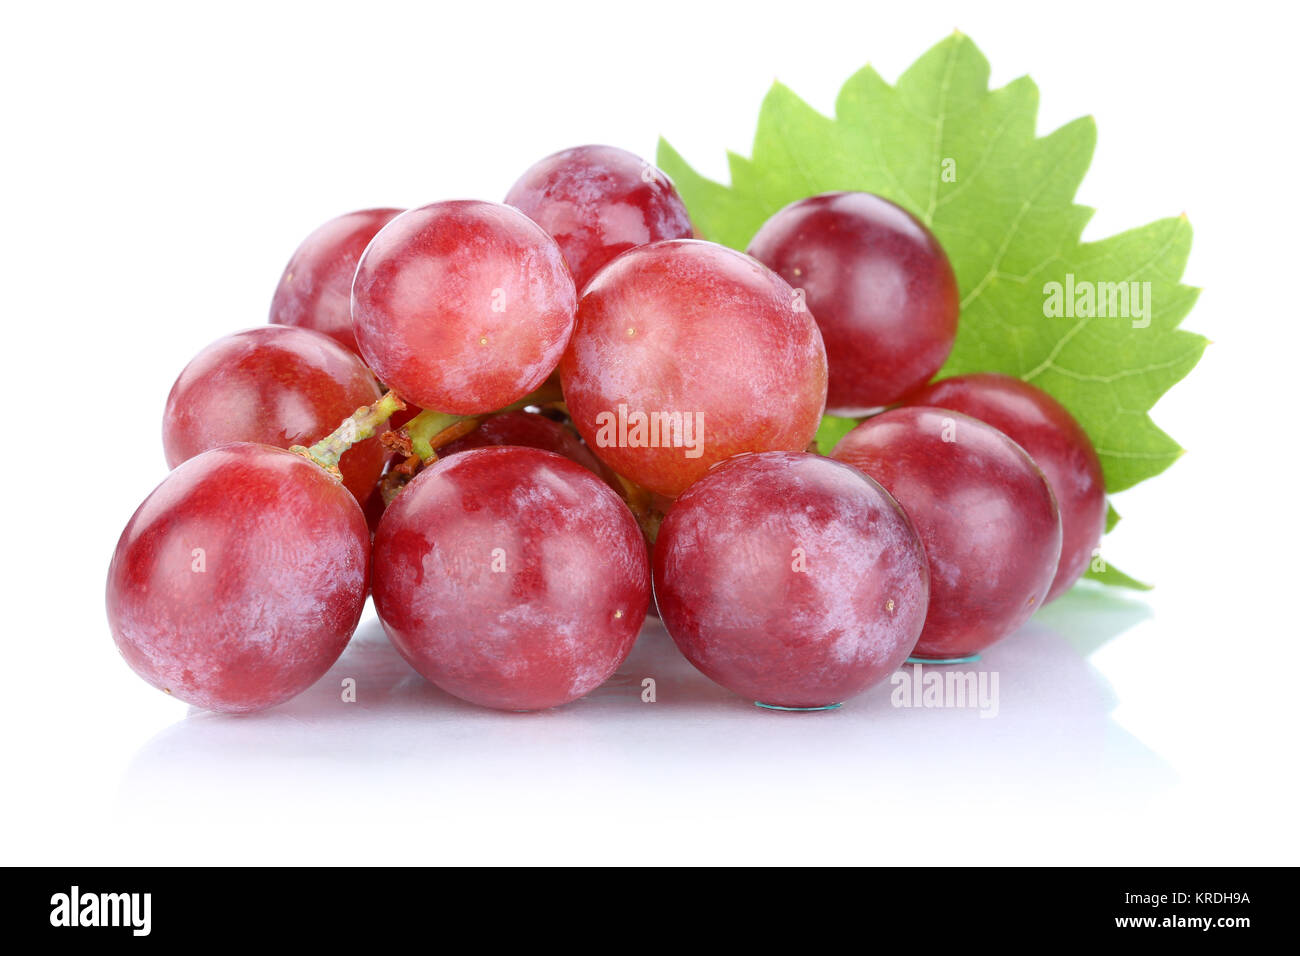 Trauben Weintrauben rot frische Früchte Obst Freisteller Stock Photo